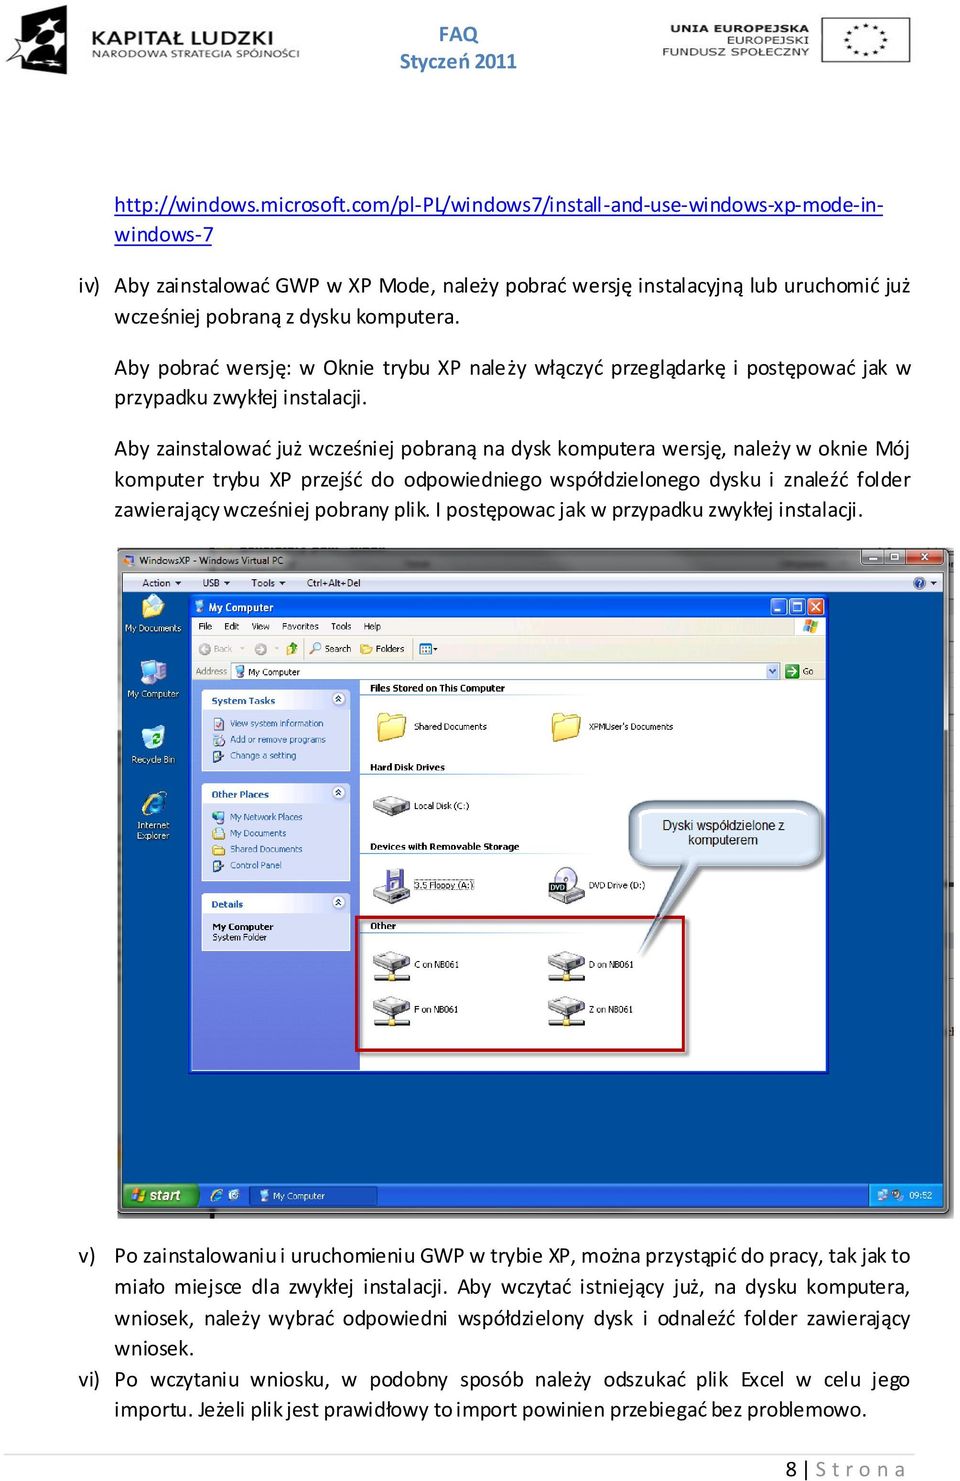 Aby pobrad wersję: w Oknie trybu XP należy włączyd przeglądarkę i postępowad jak w przypadku zwykłej instalacji.